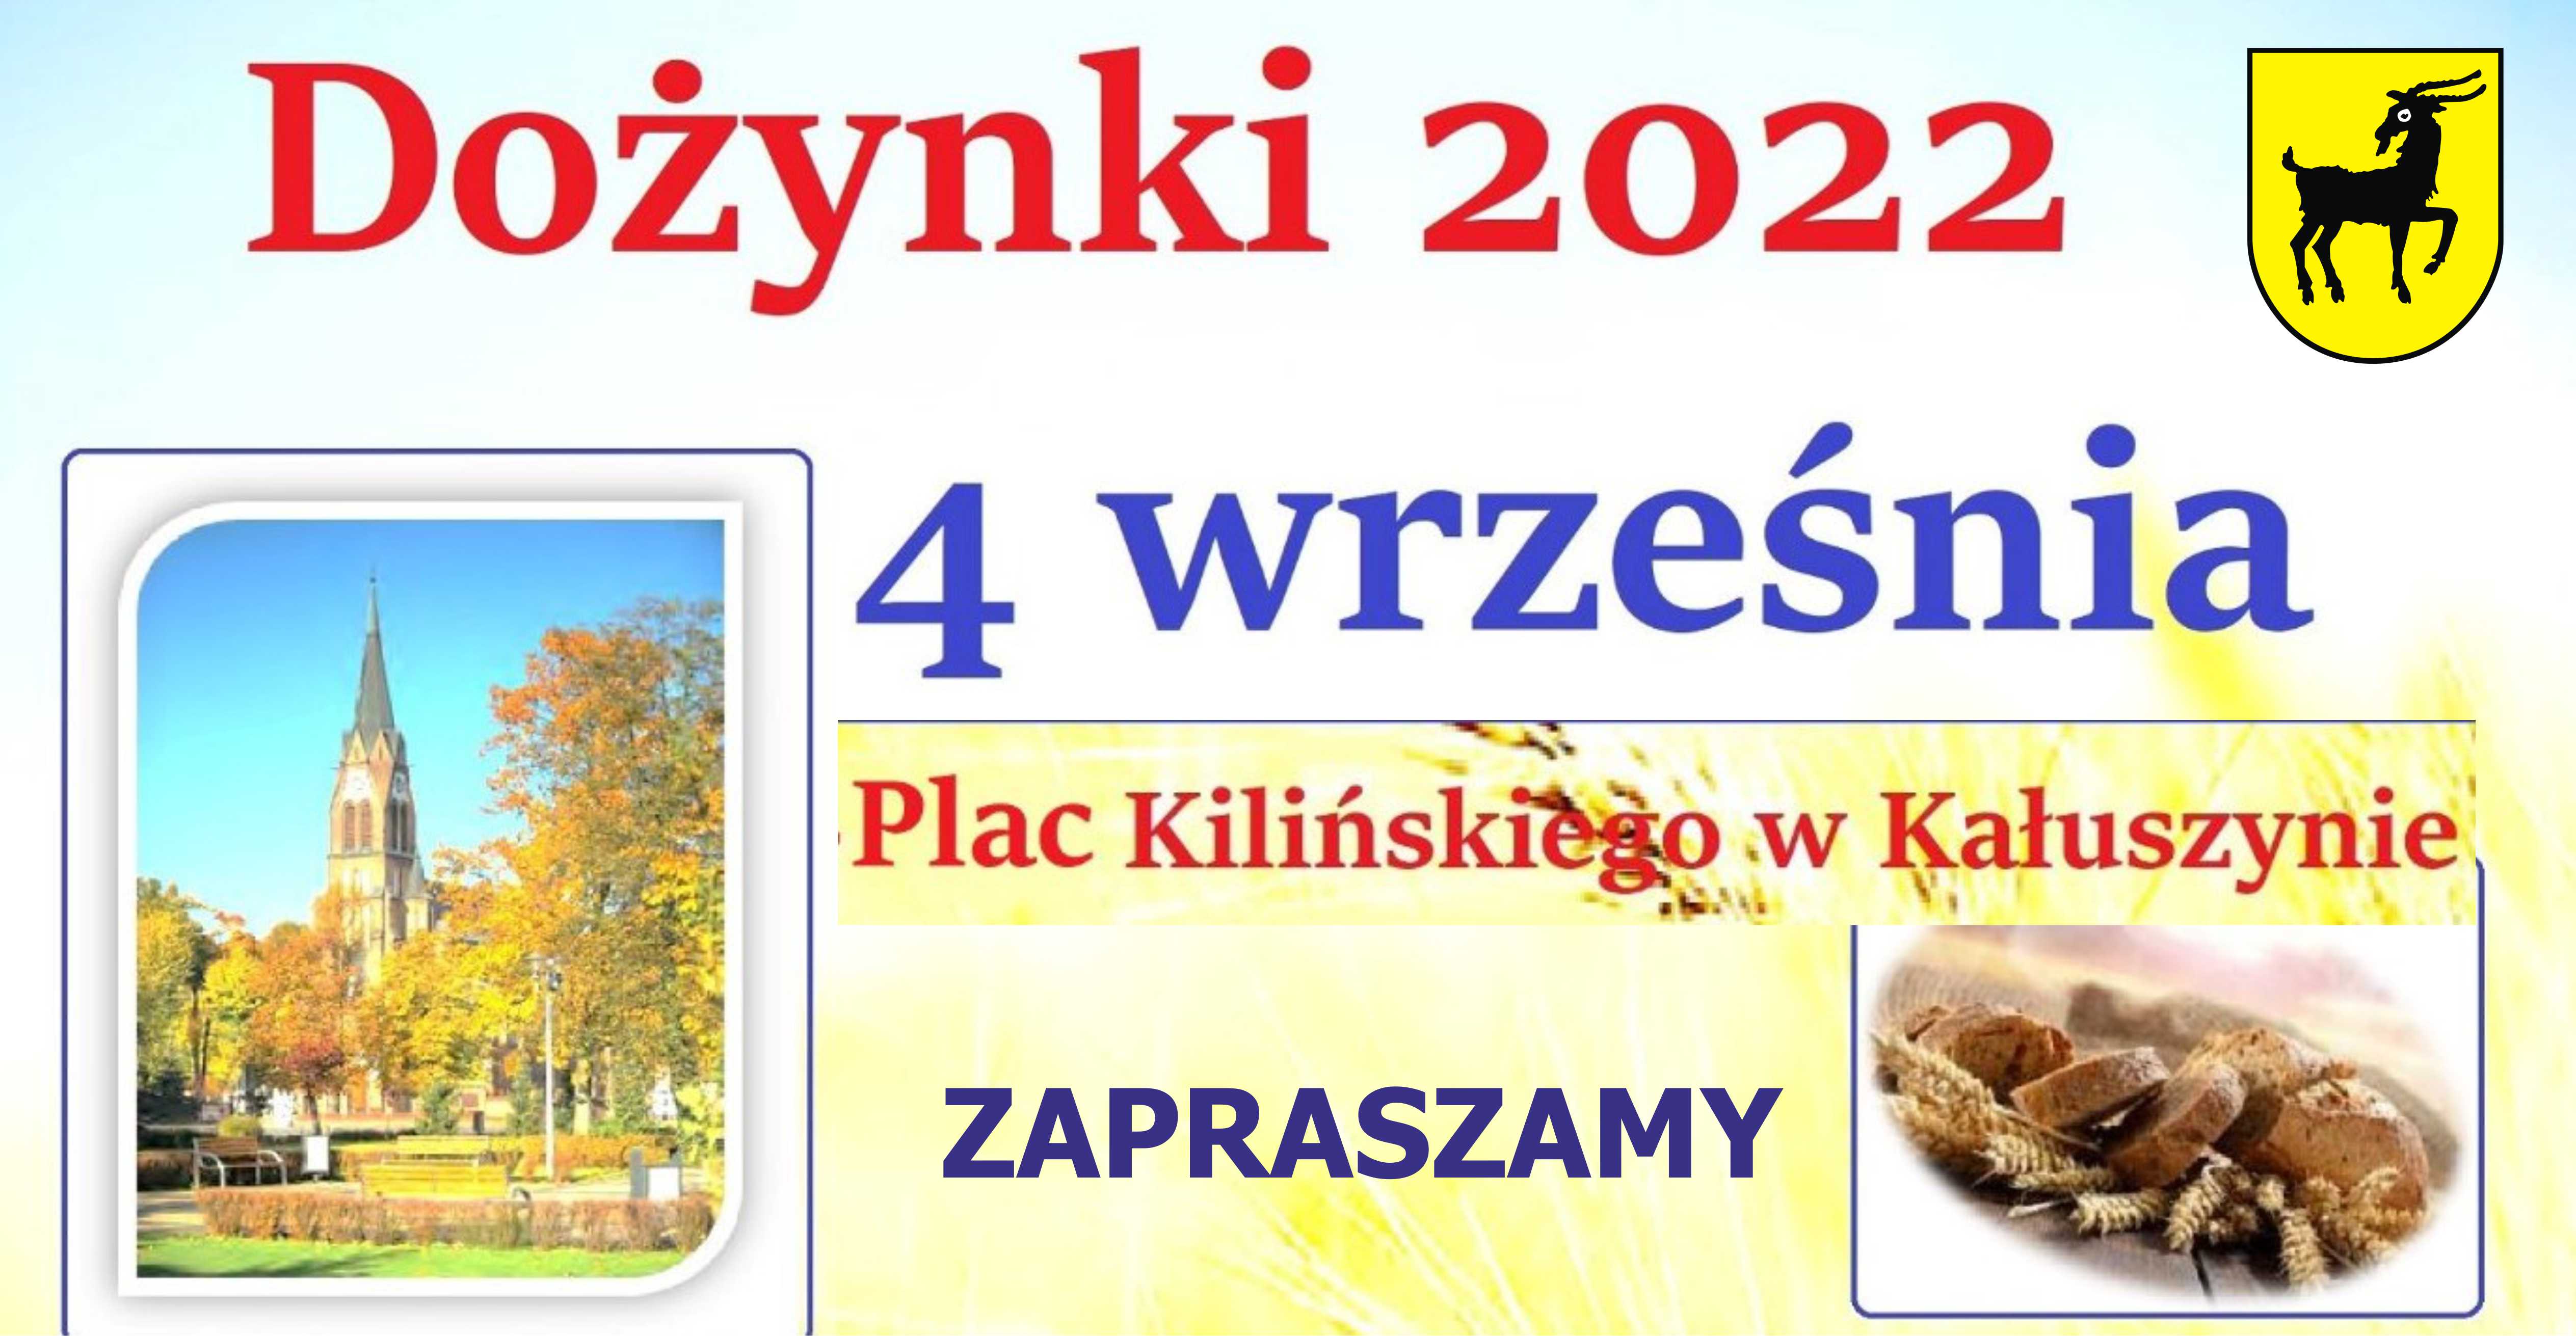 Kauszyn plonw 2022 / Z pozycji tradycji